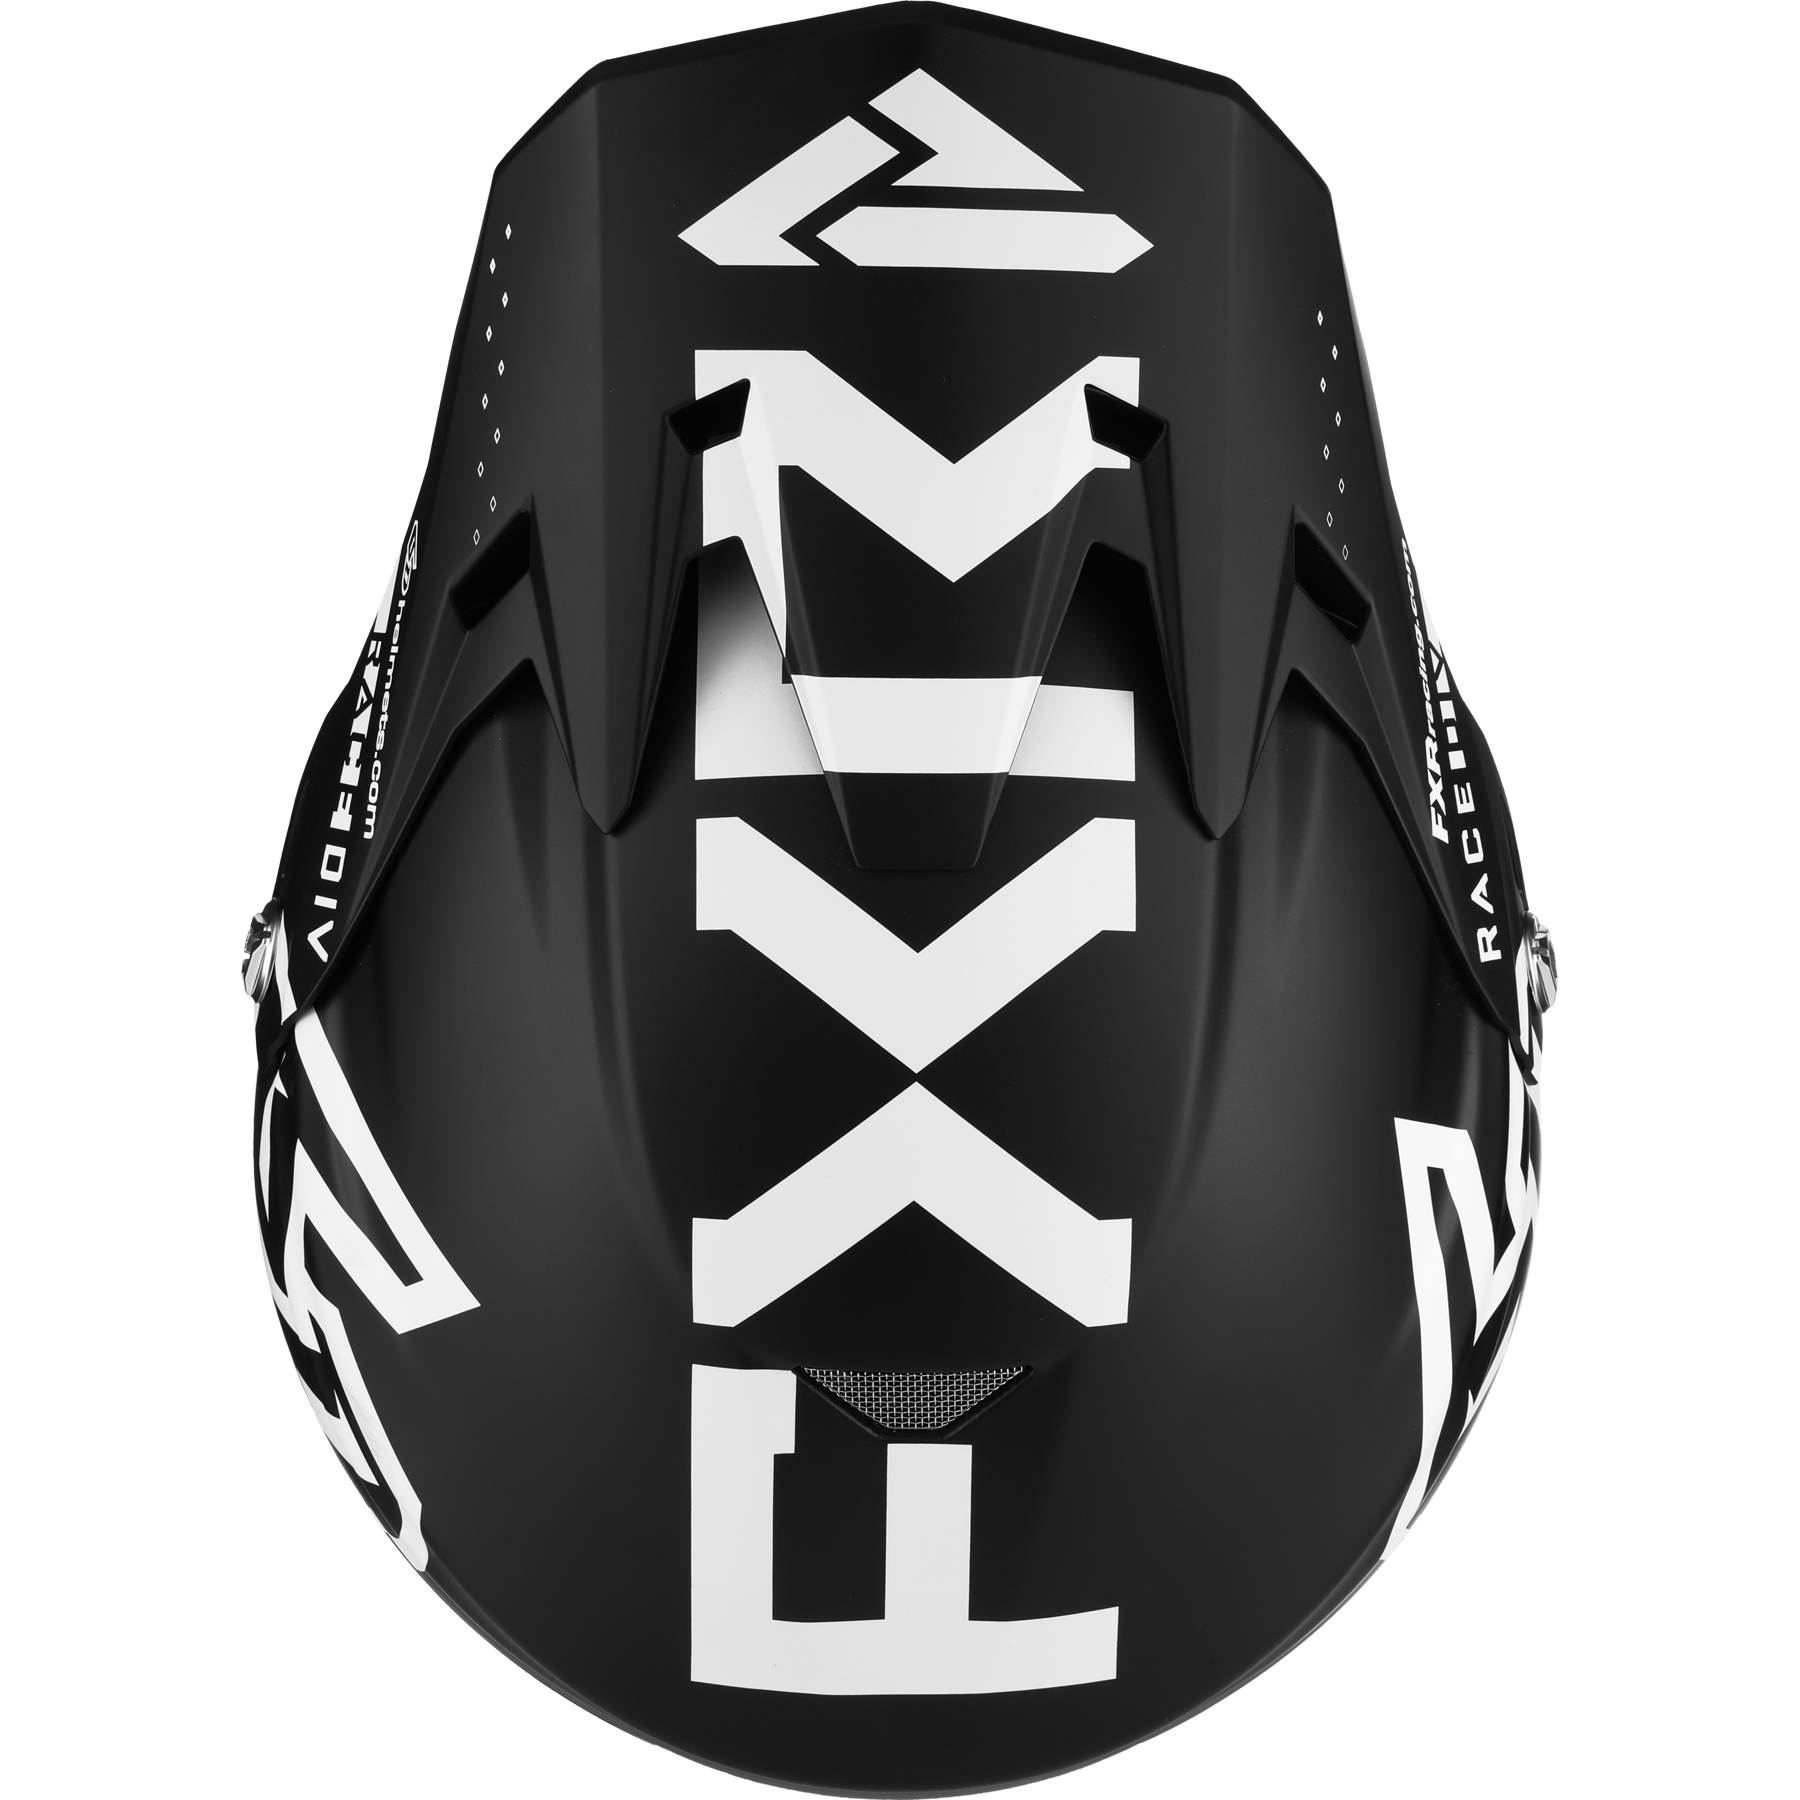 FXR 6D ATR-2 Youth MX Helmet Black/White